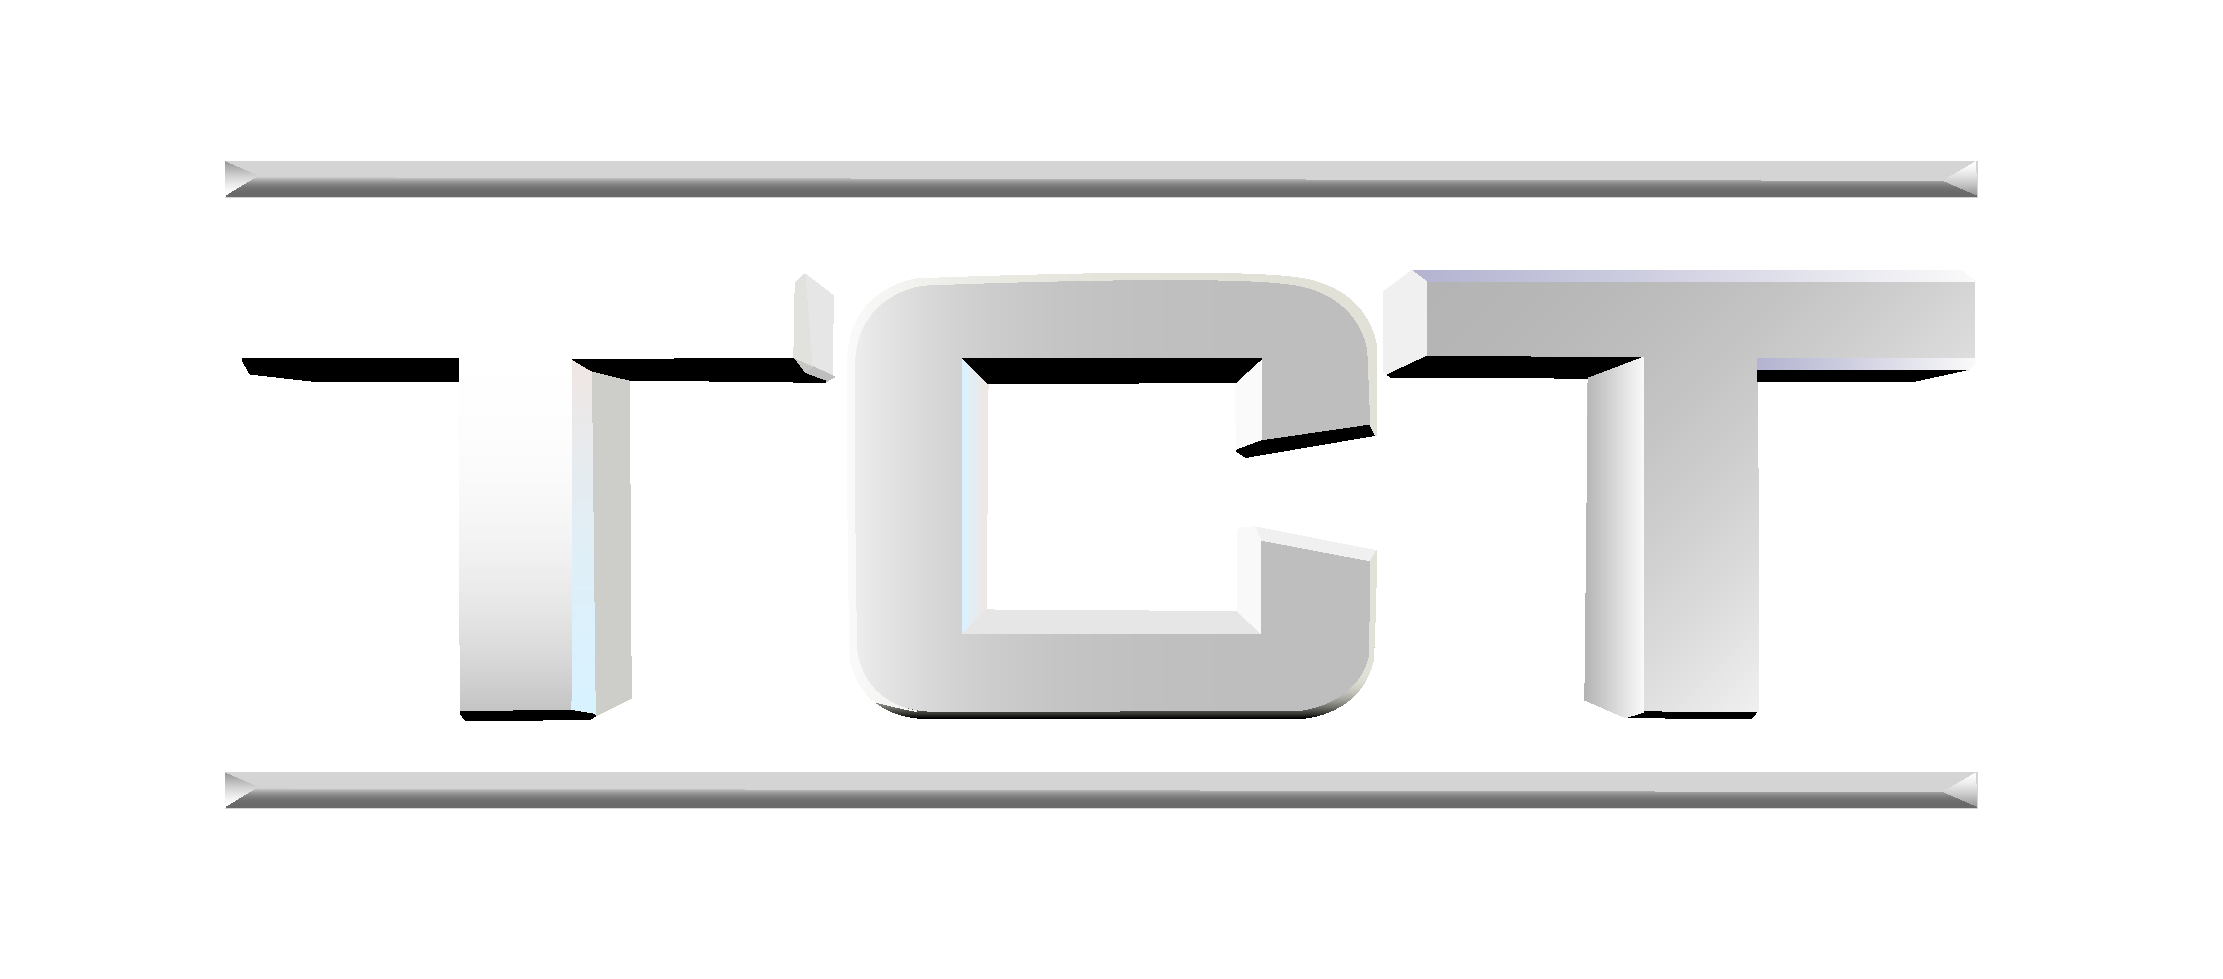 TCT TV